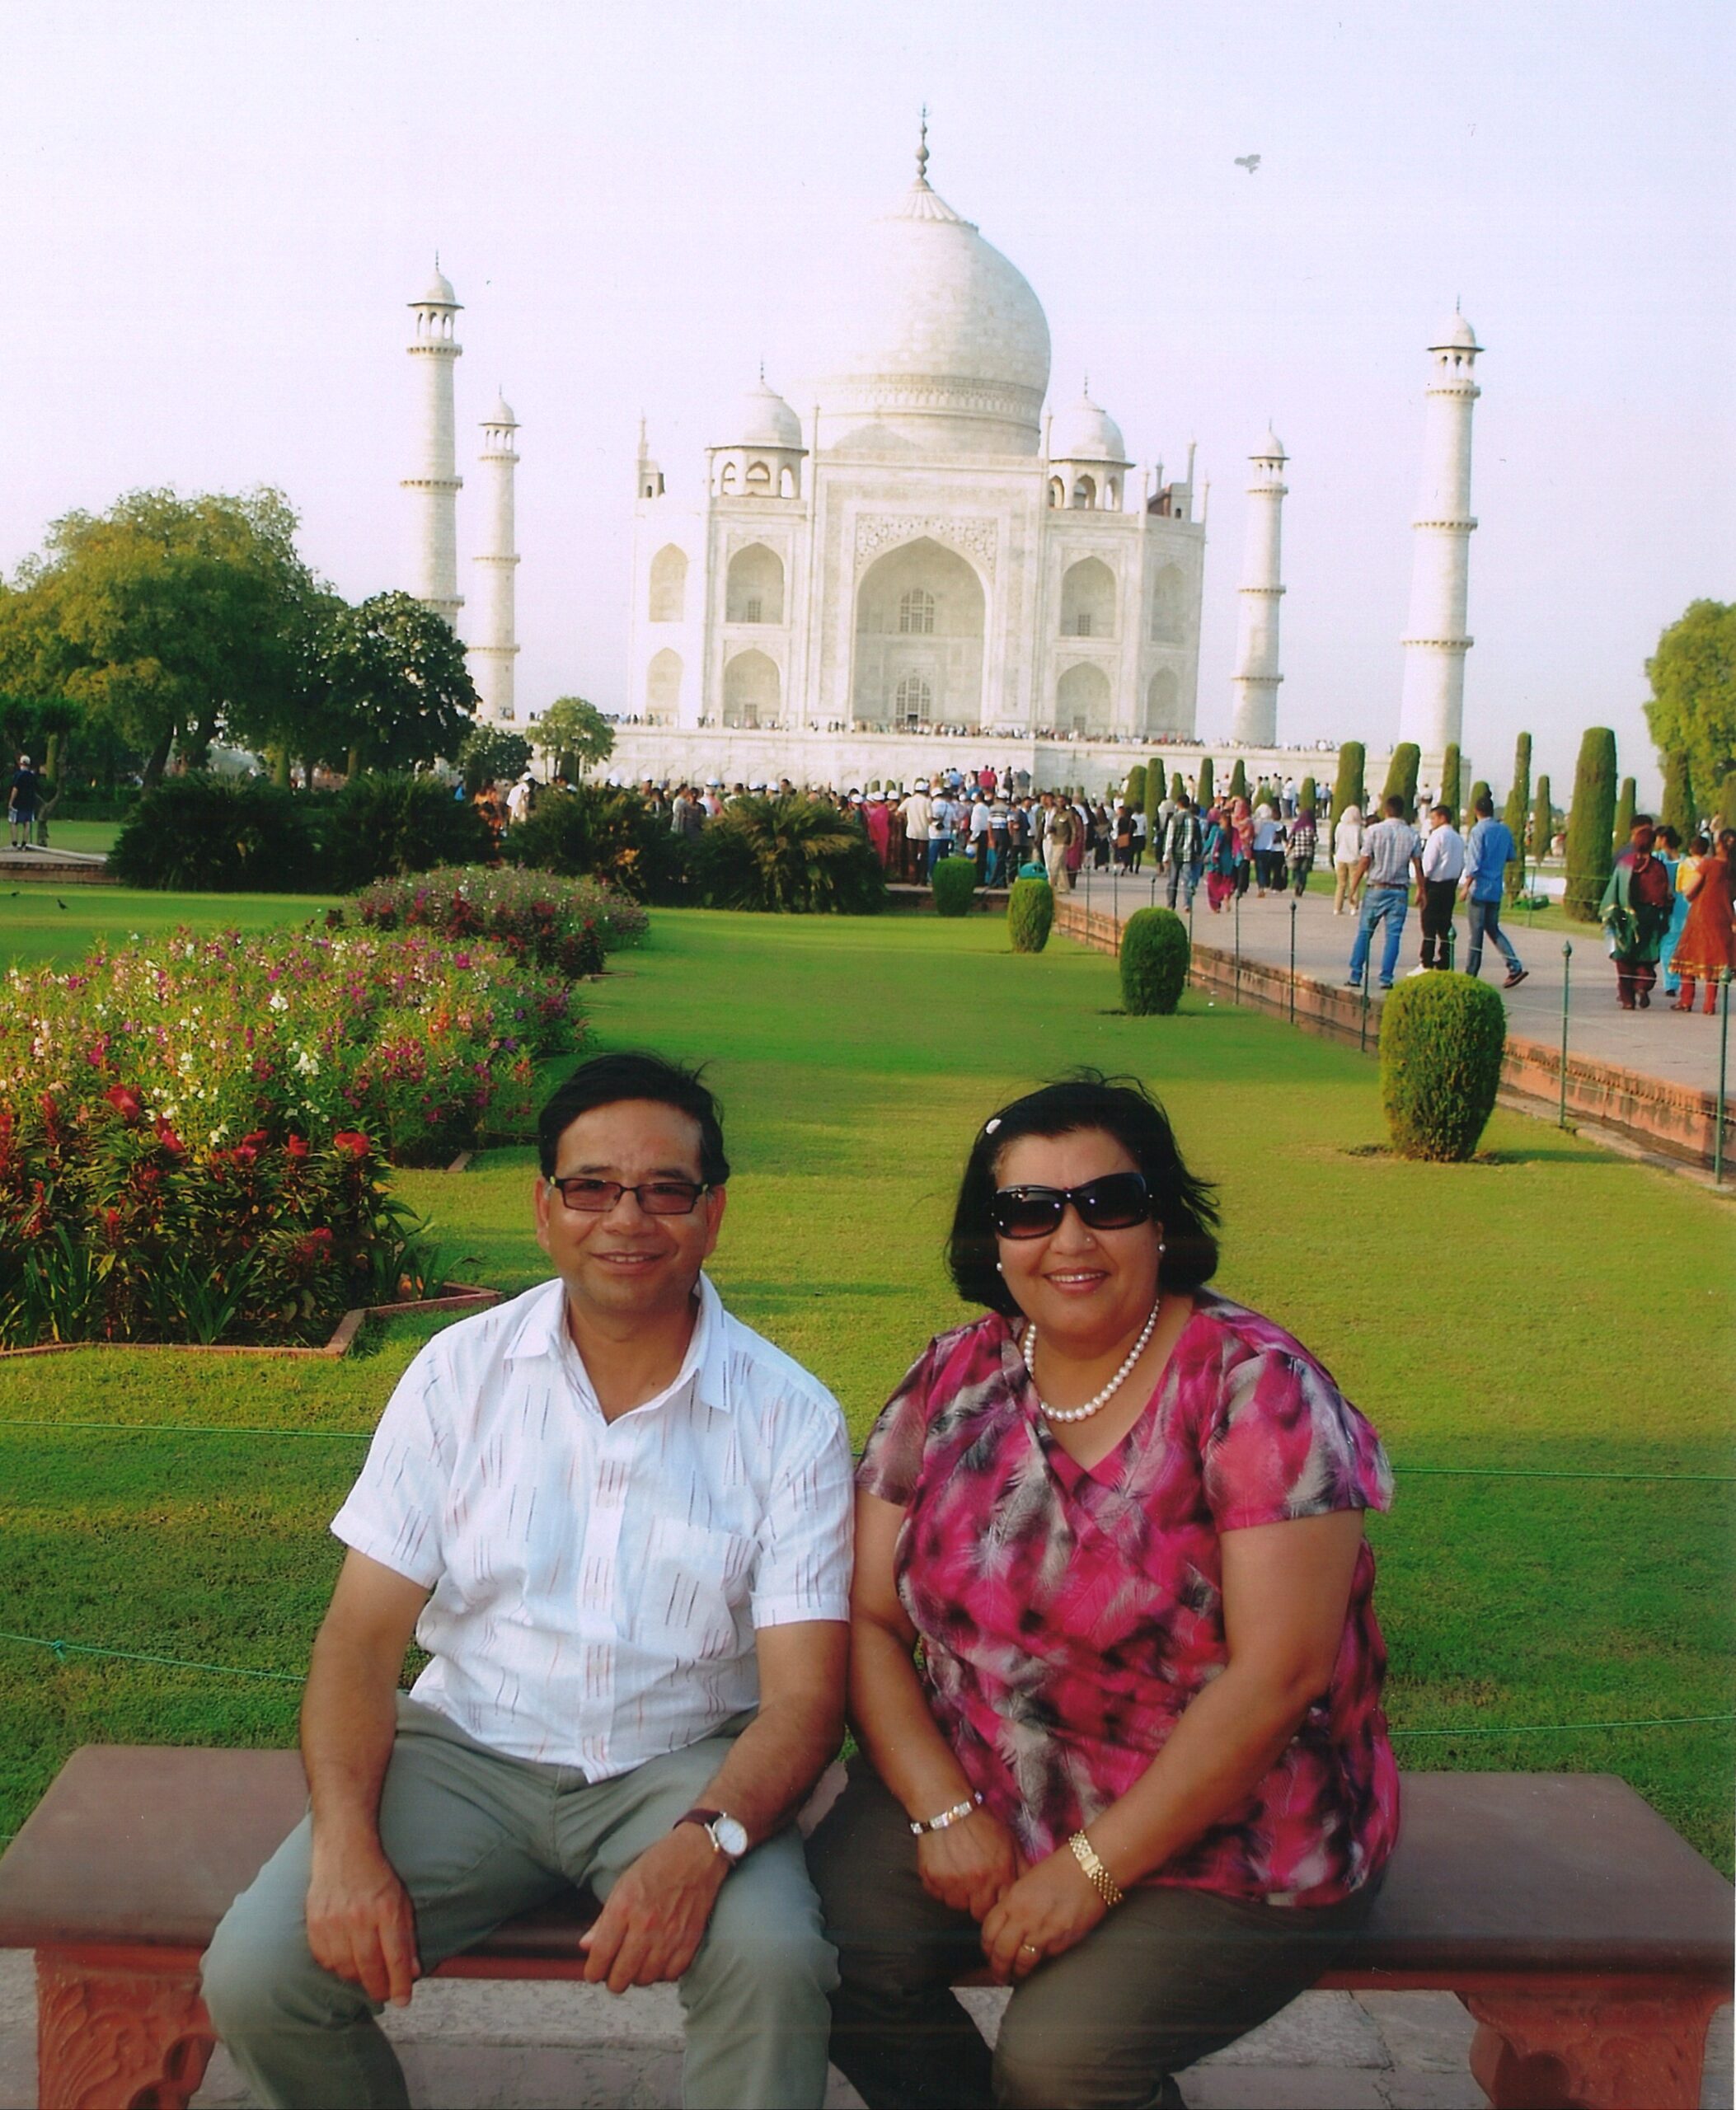 Kedar and Mira Adhikari at the Taj Mahal, India.